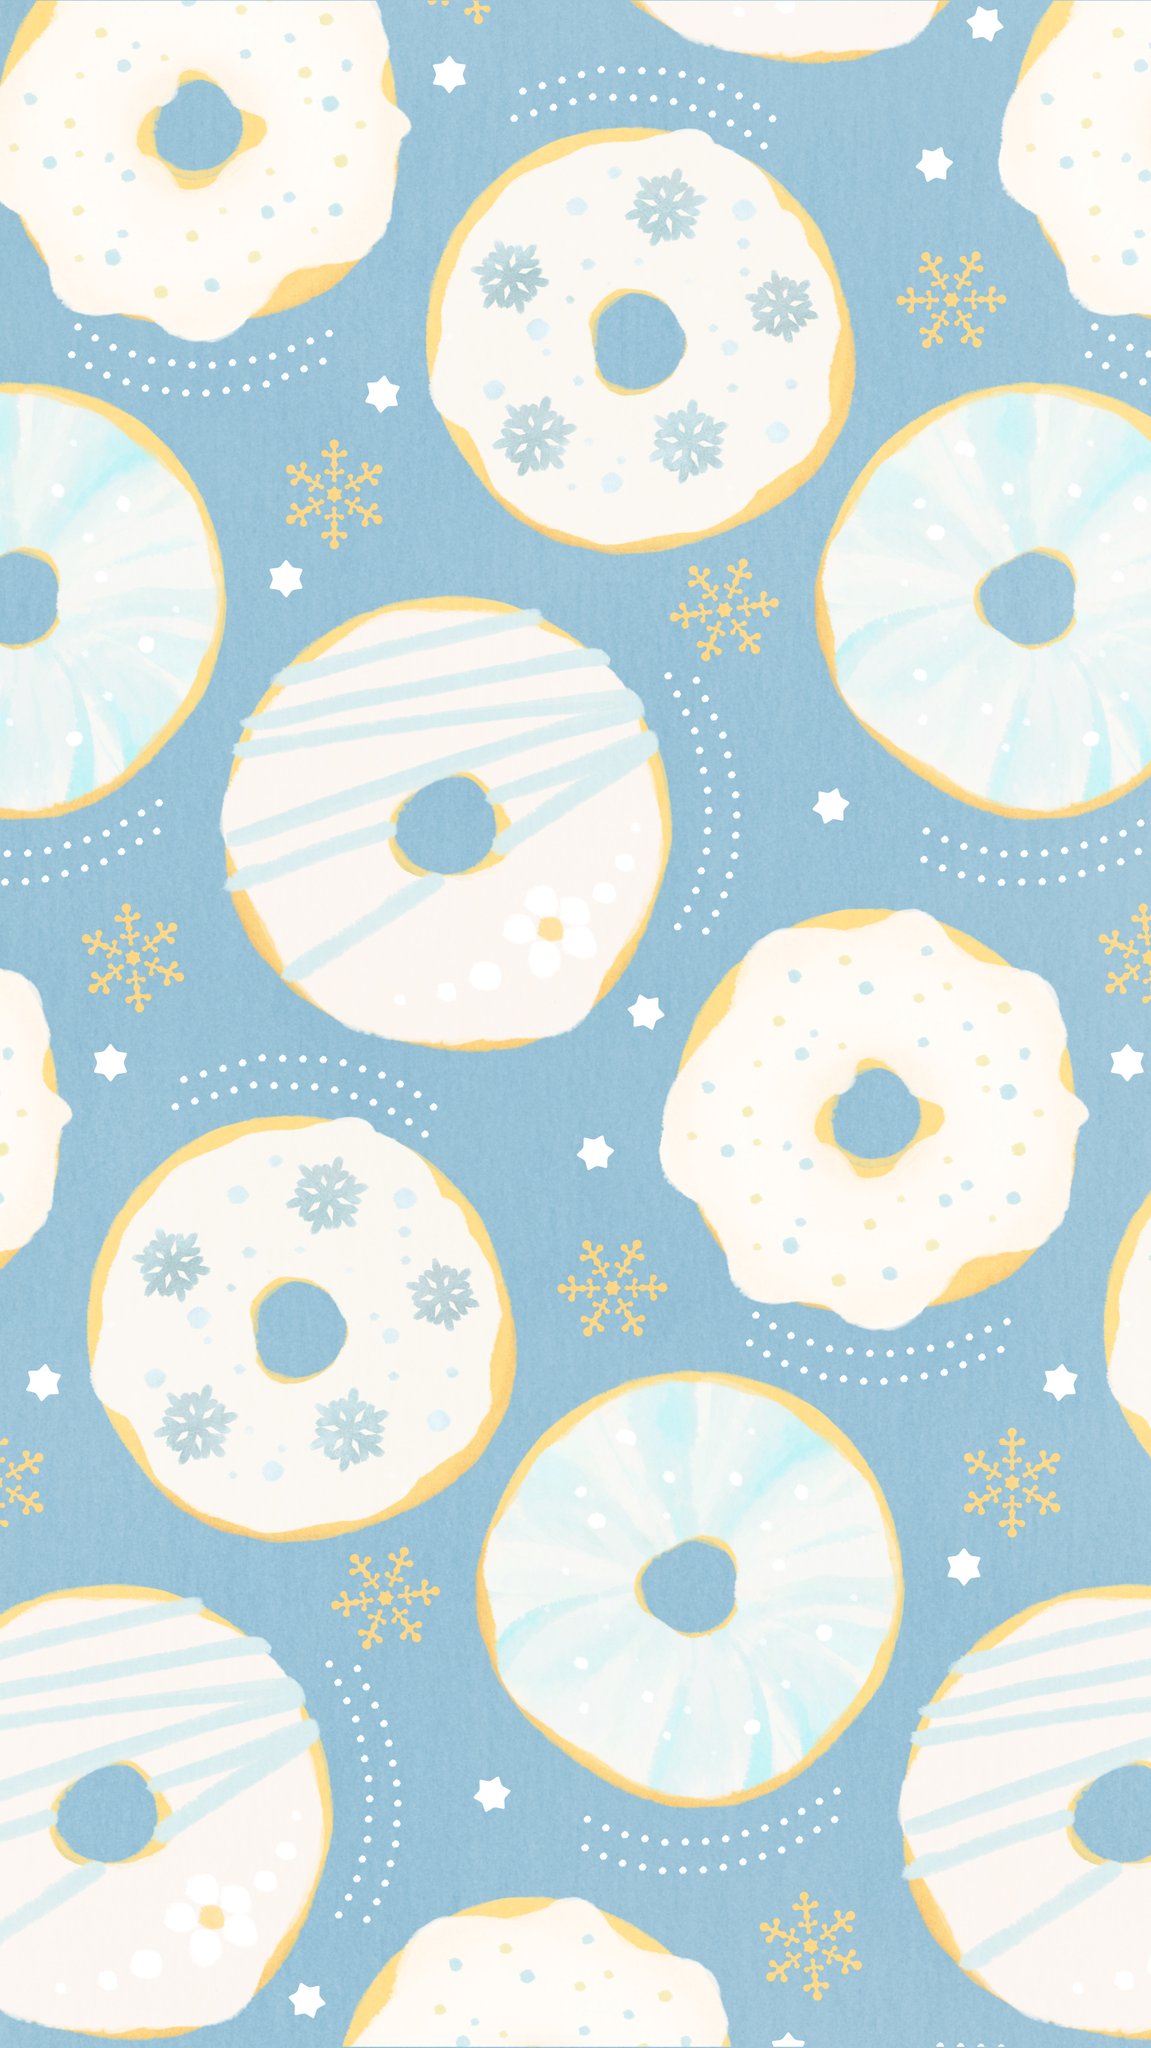 Omiyu お返事遅くなります On Twitter ドーナツな壁紙 Illust Illustration ドーナツ Donuts イラスト Iphone壁紙 壁紙 雪